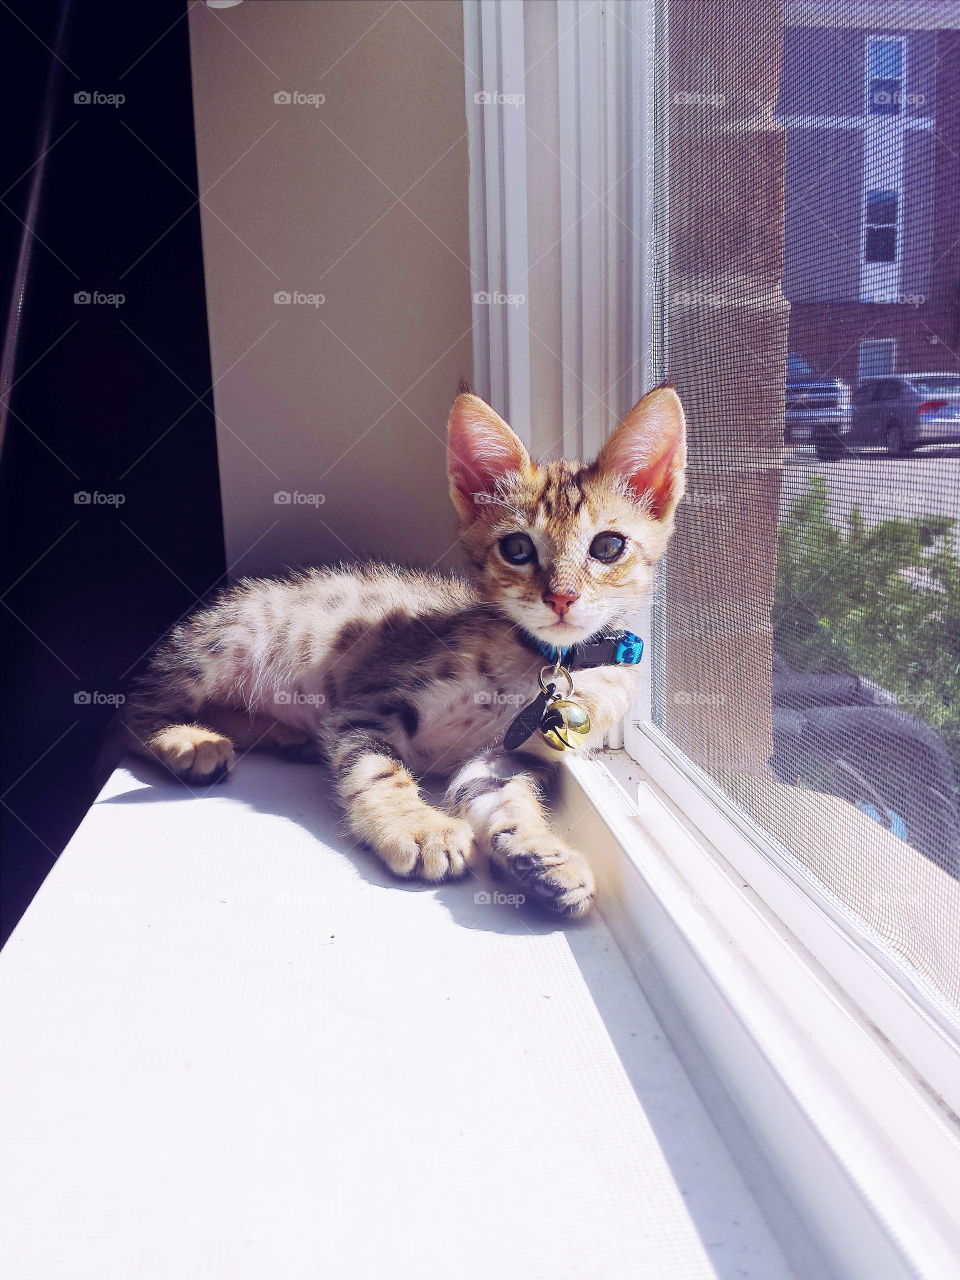 kitten by the window. kitten by the window